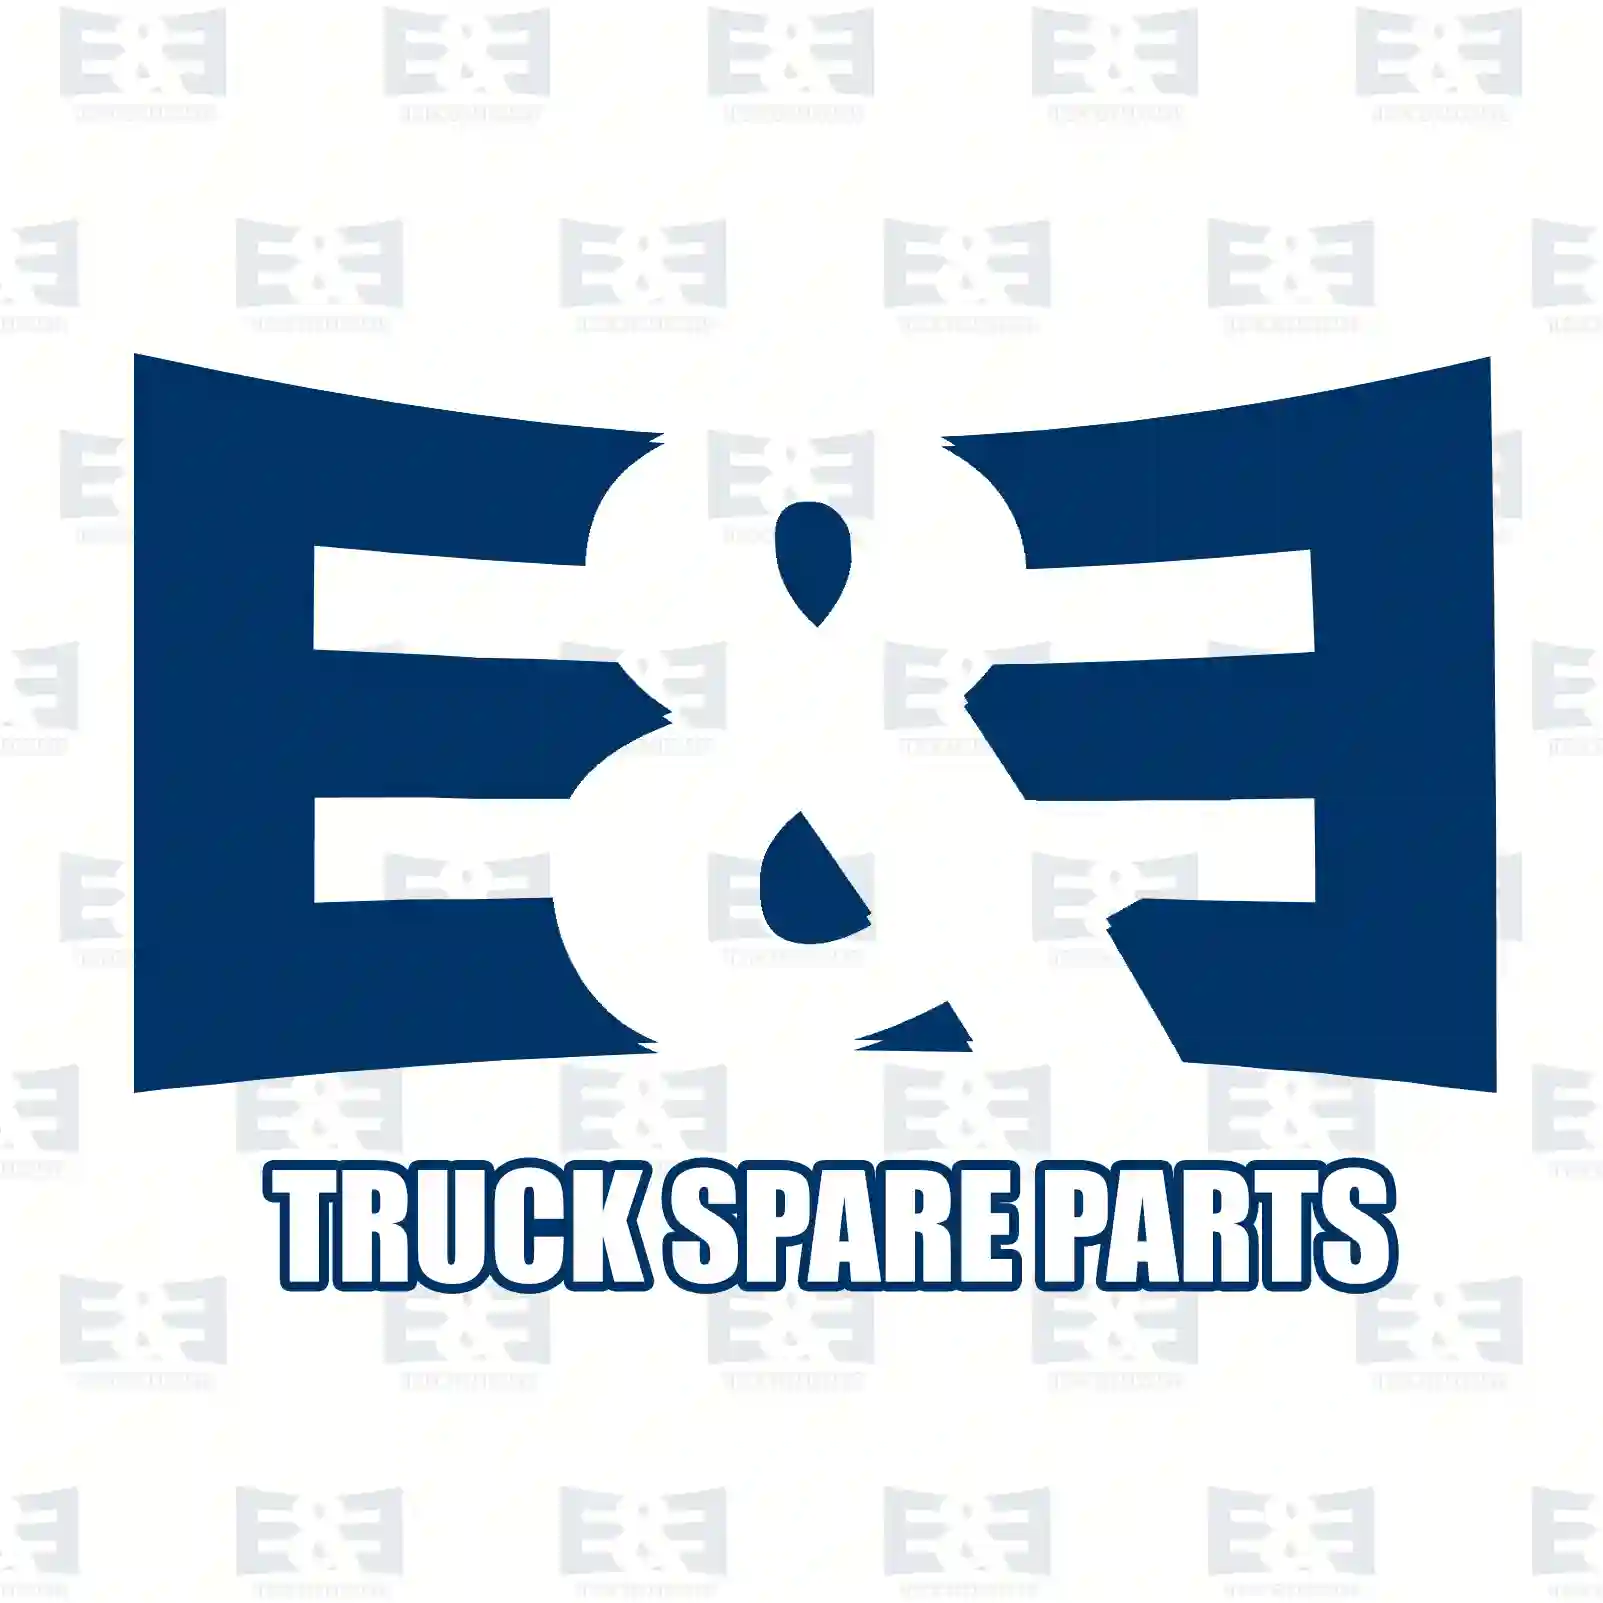 Screw collar, 2E2270350, 4003530325, 81351250005, 3553530325, ZG30139-0008 ||  2E2270350 E&E Truck Spare Parts | Truck Spare Parts, Auotomotive Spare Parts Screw collar, 2E2270350, 4003530325, 81351250005, 3553530325, ZG30139-0008 ||  2E2270350 E&E Truck Spare Parts | Truck Spare Parts, Auotomotive Spare Parts